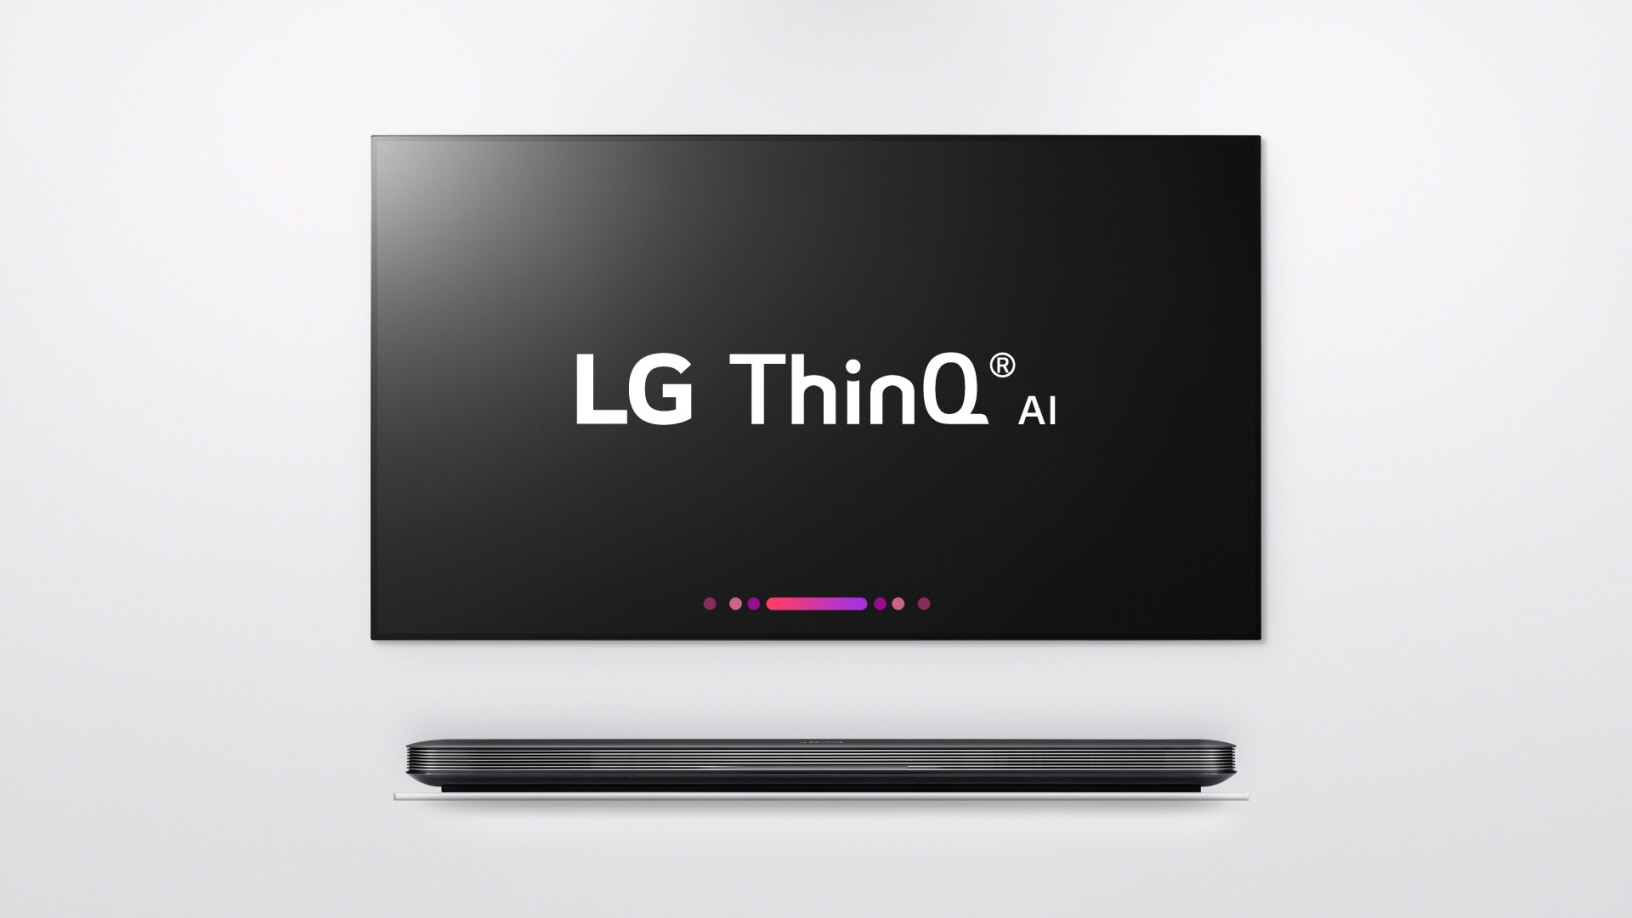 LG добавит смартфону LG V30 новый цвет Raspberry Rose и наделит новые телевизоры поддержкой Google Assistant вдобавок к собственной системе ИИ